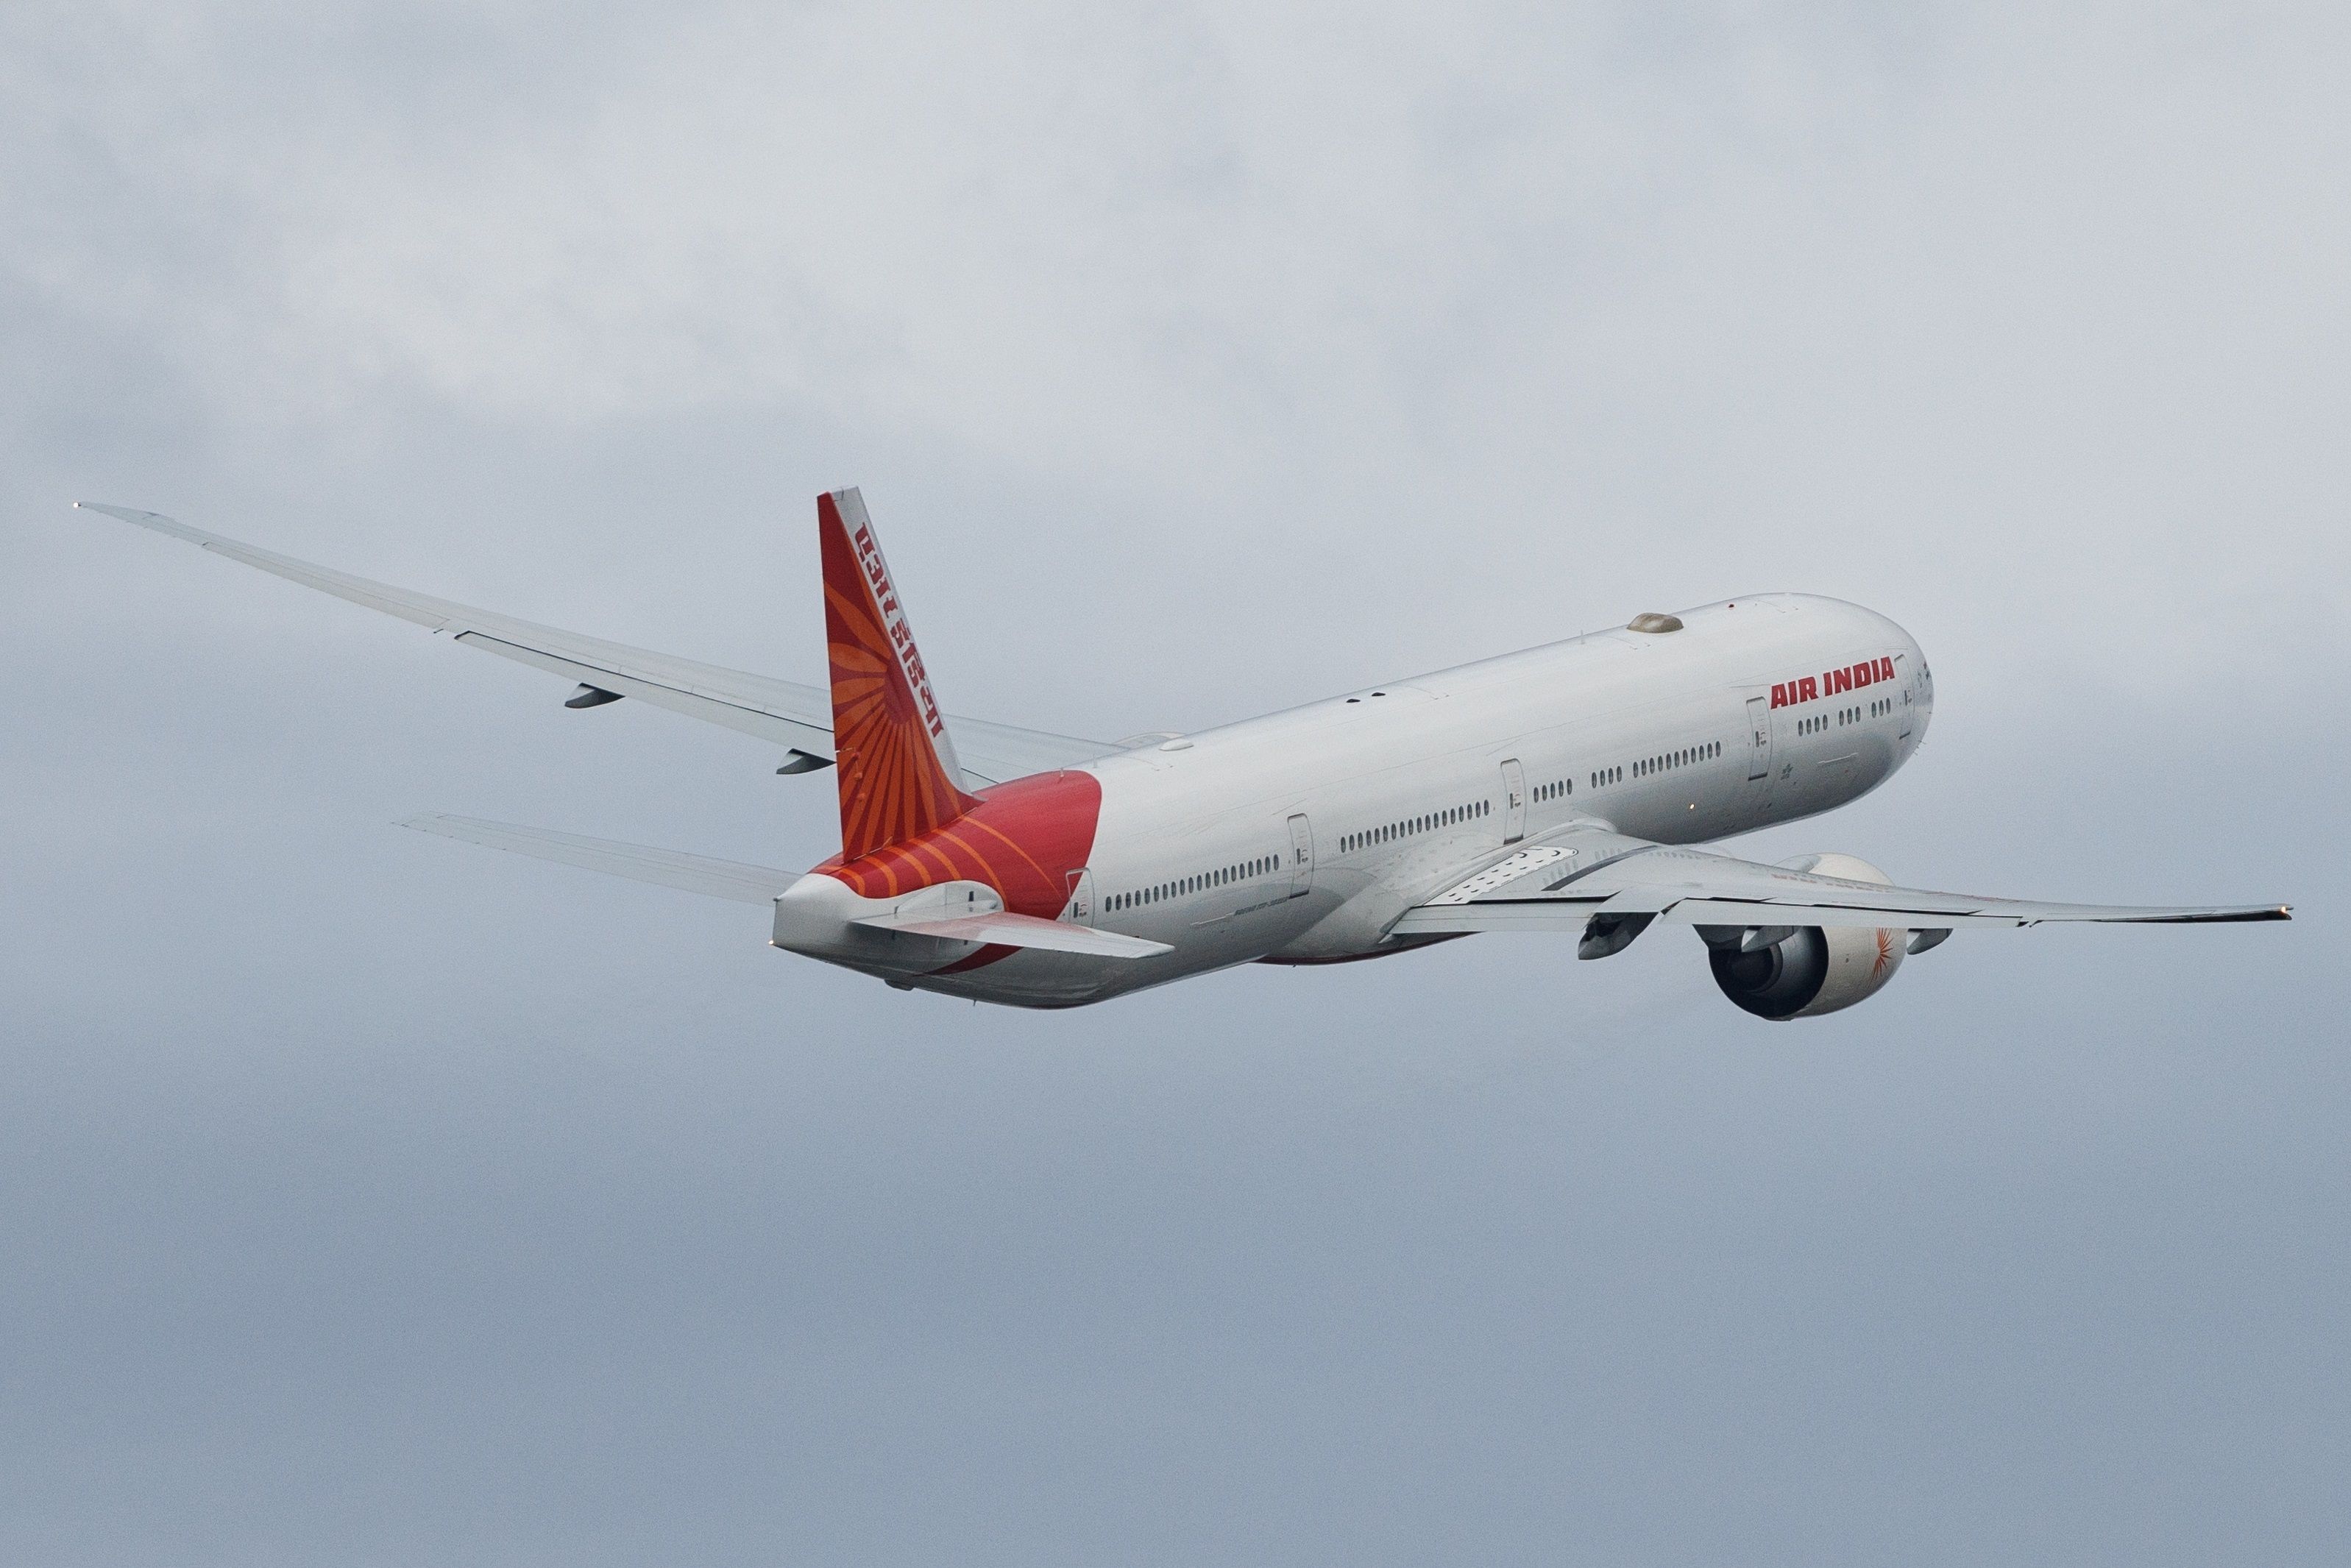 VT-AER 777-300ER AI taking off